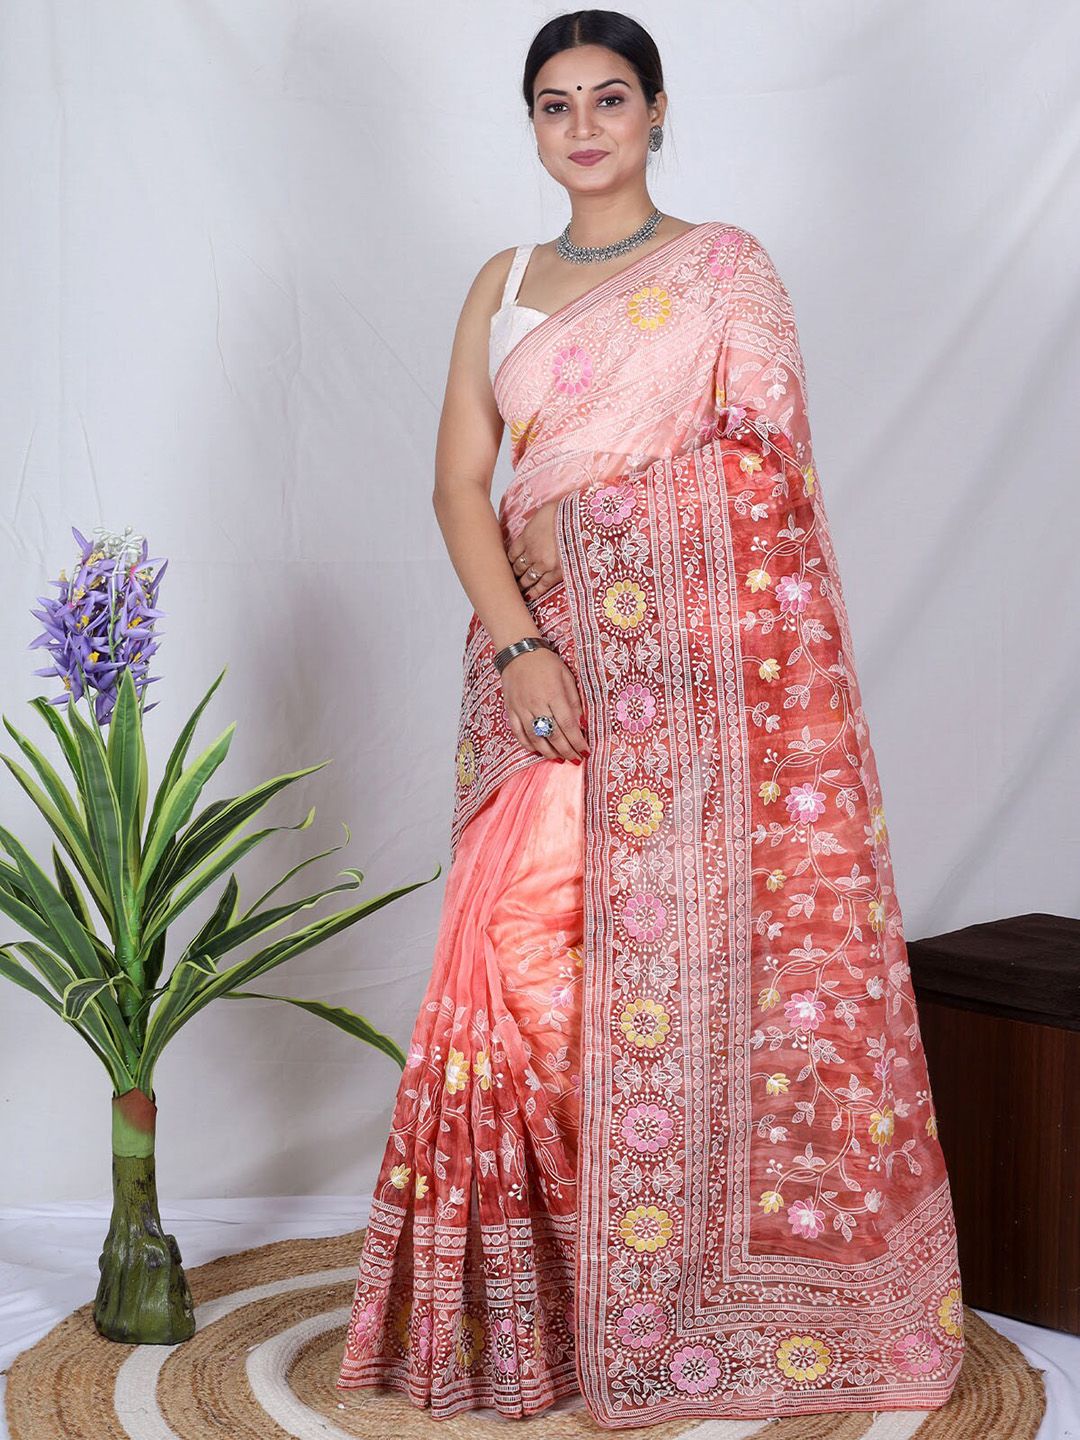 ODETTE Orange & White Floral Embroidered Organza Saree Price in India